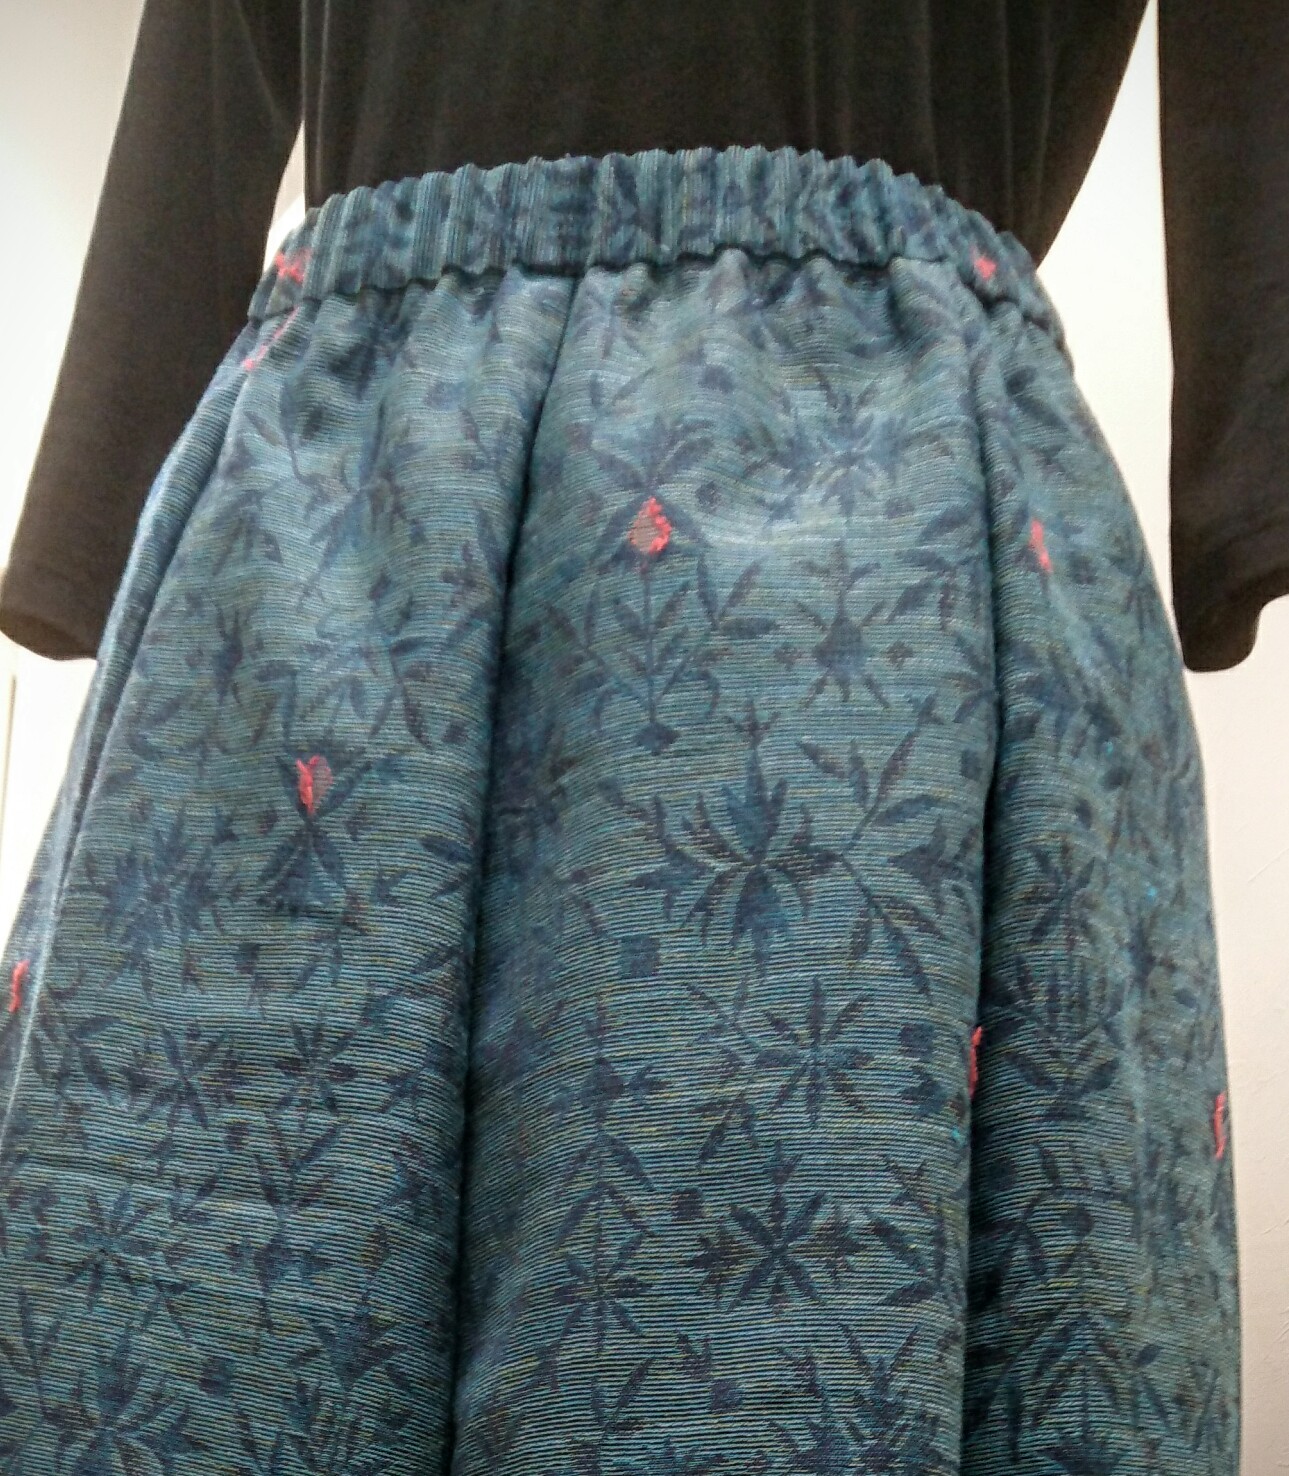 お直しどうでしょう ウエストゴム祭り編 京急百貨店 神奈川県 洋服のお直し リフォーム 裾上げならフォルムアイ